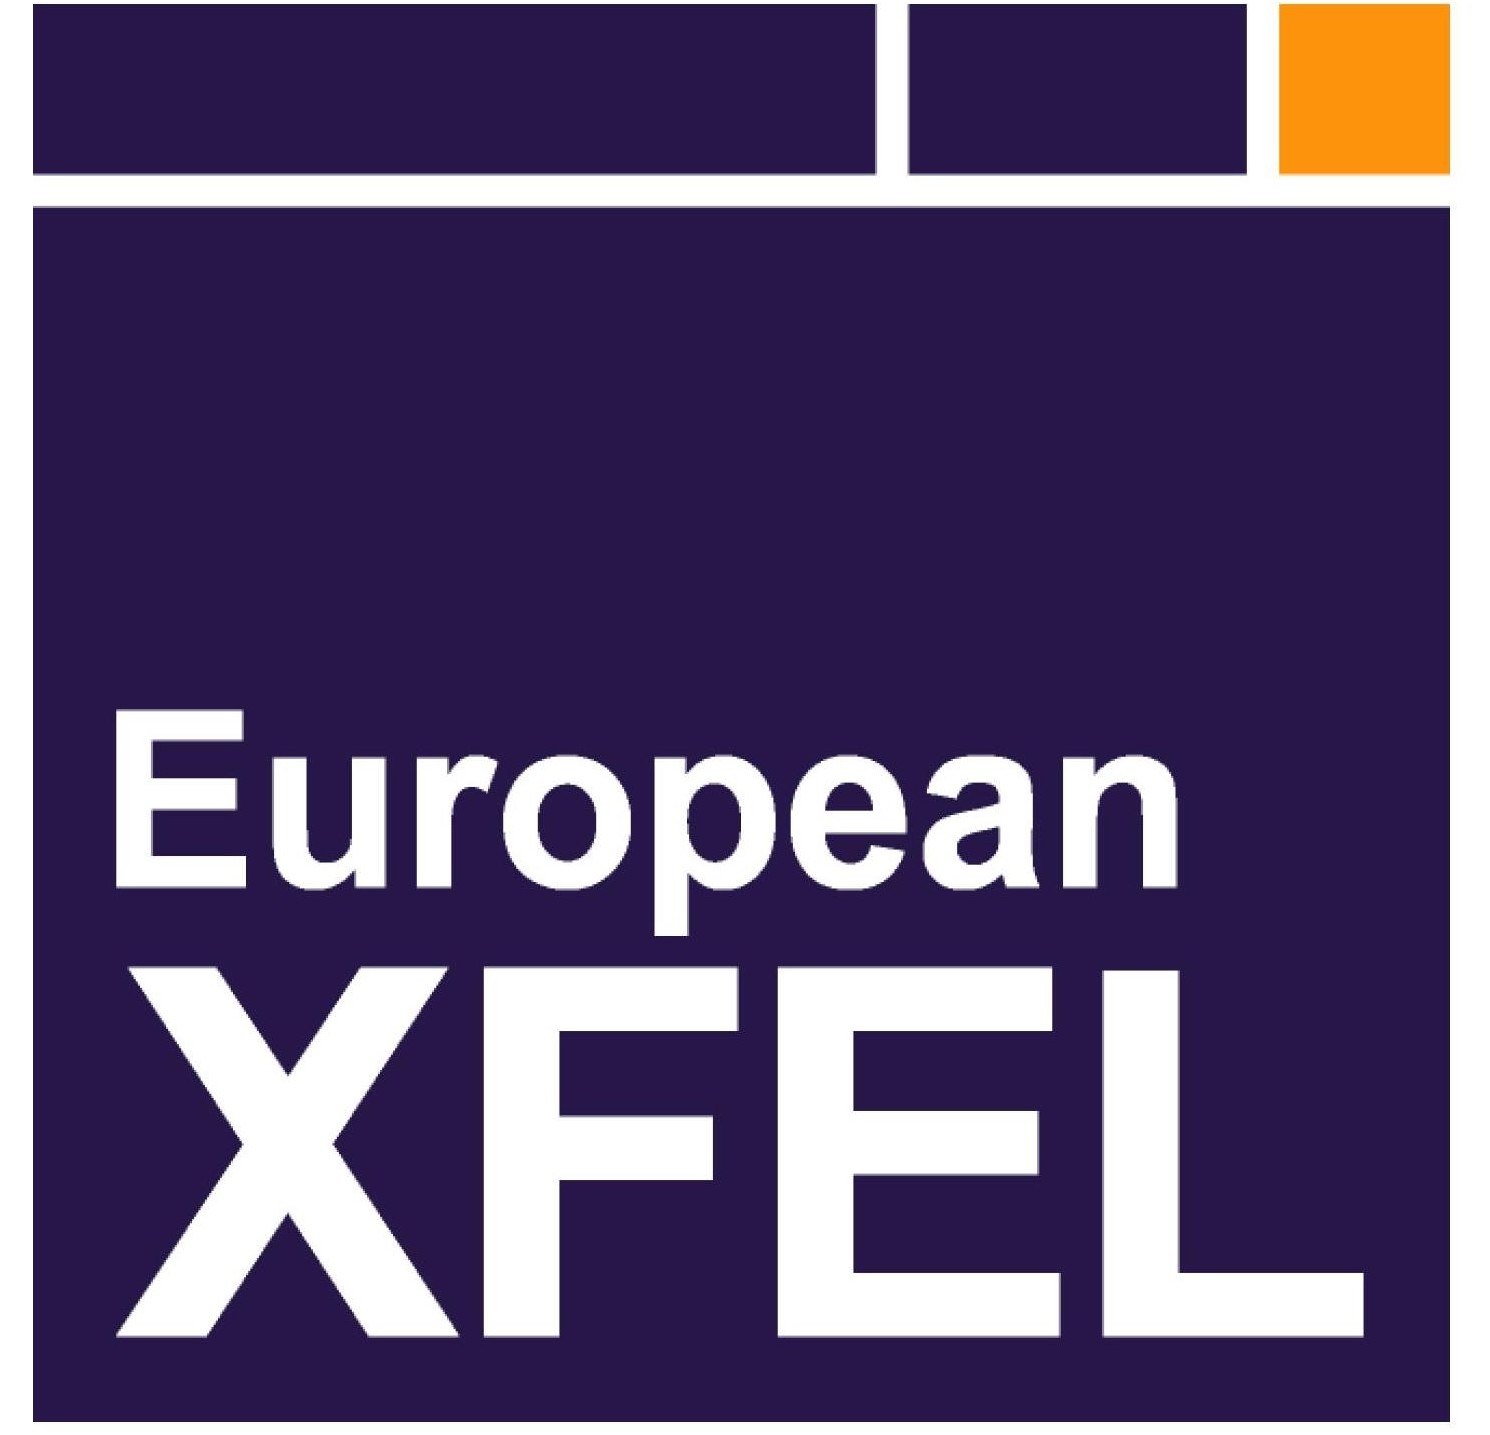 European XFEL - European x-ray free electron laser logo [PDF]